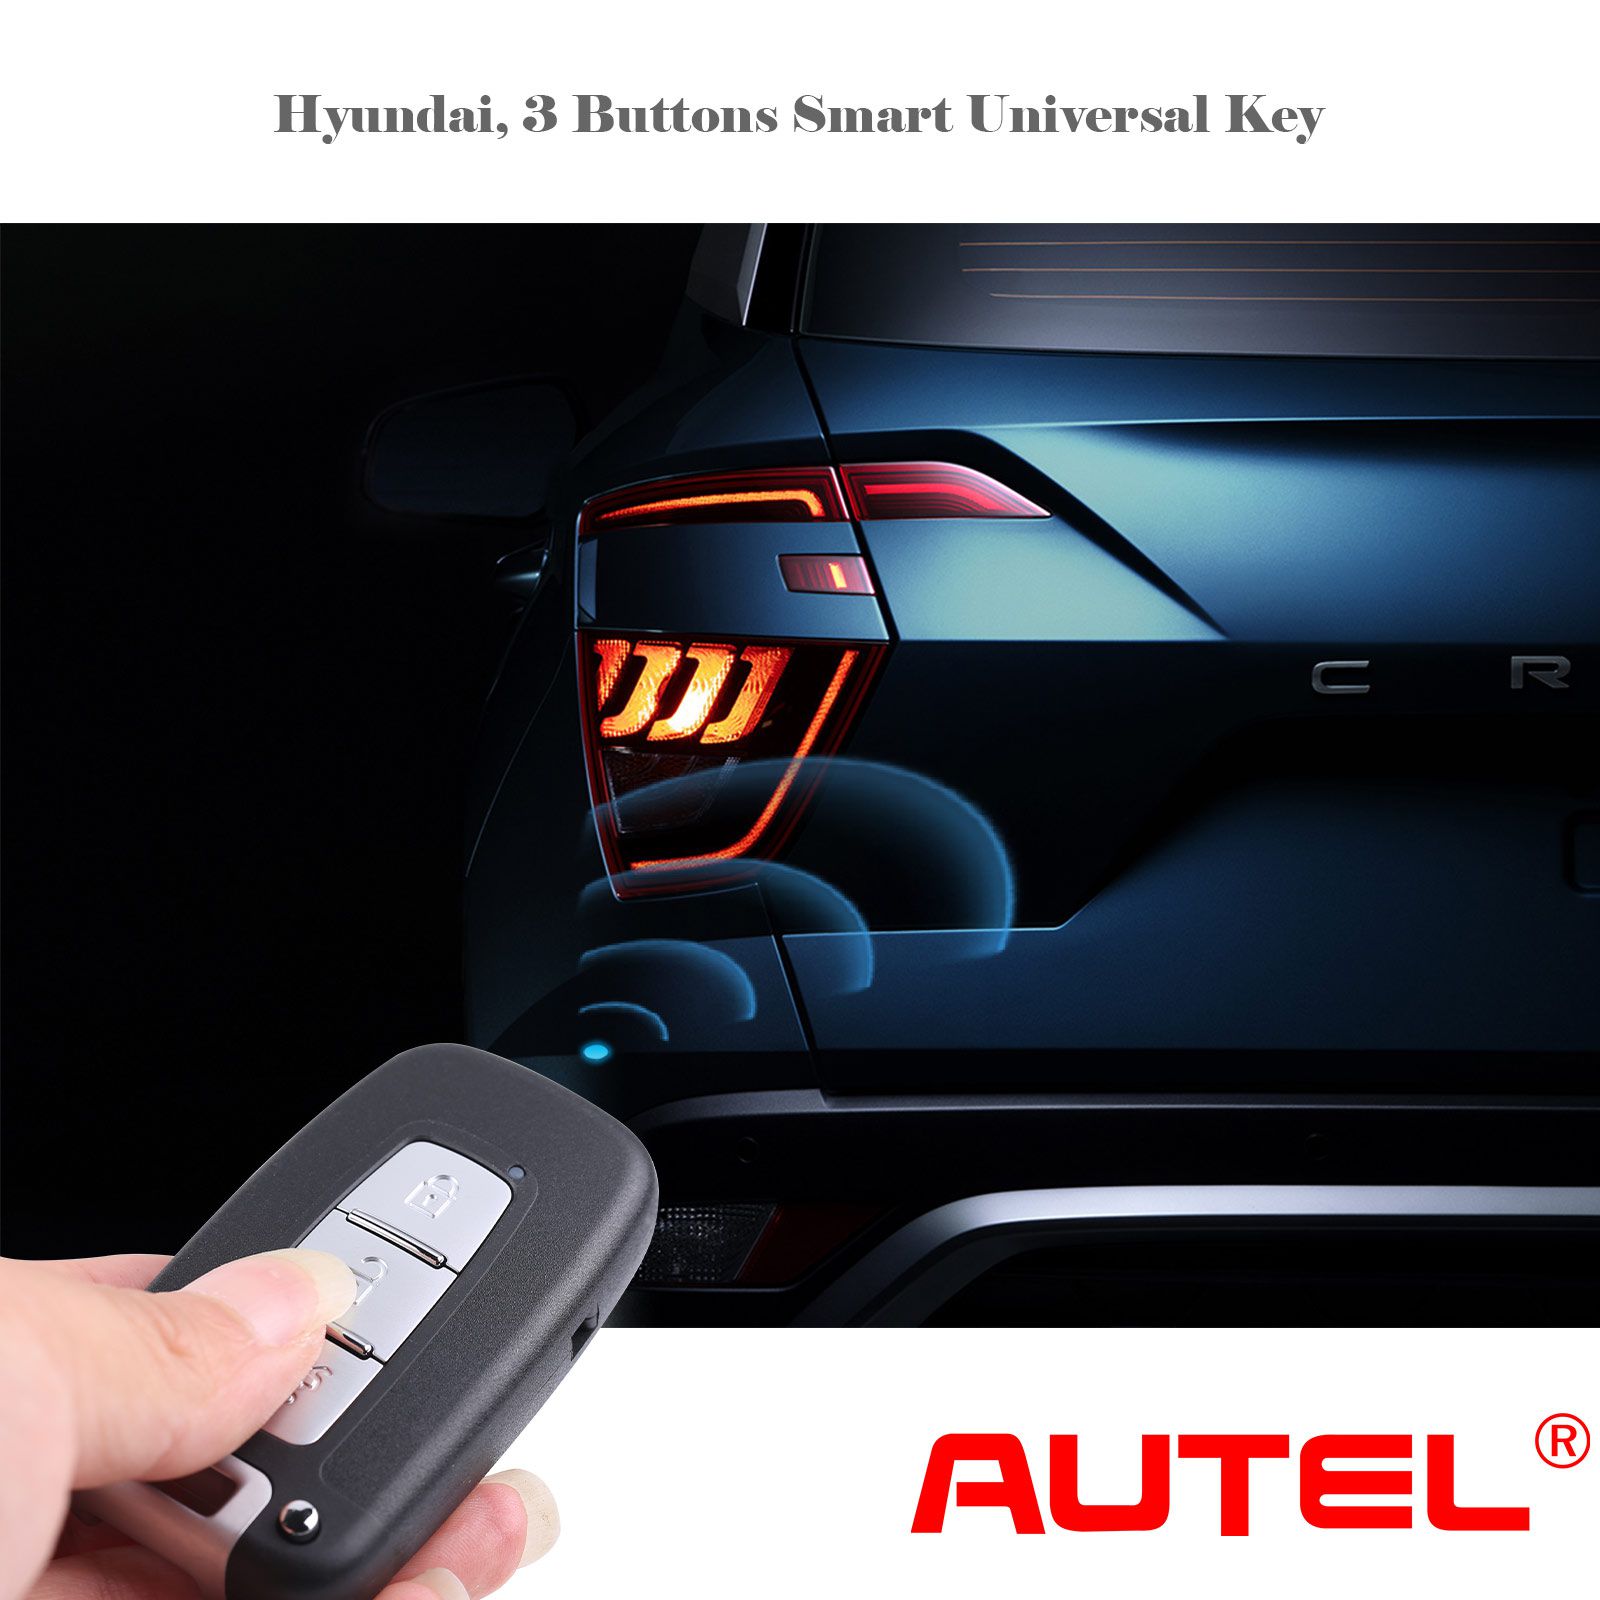 Autel ikeyhy003al Hyundai 3 botones llave inteligente universal 5 piezas / lote